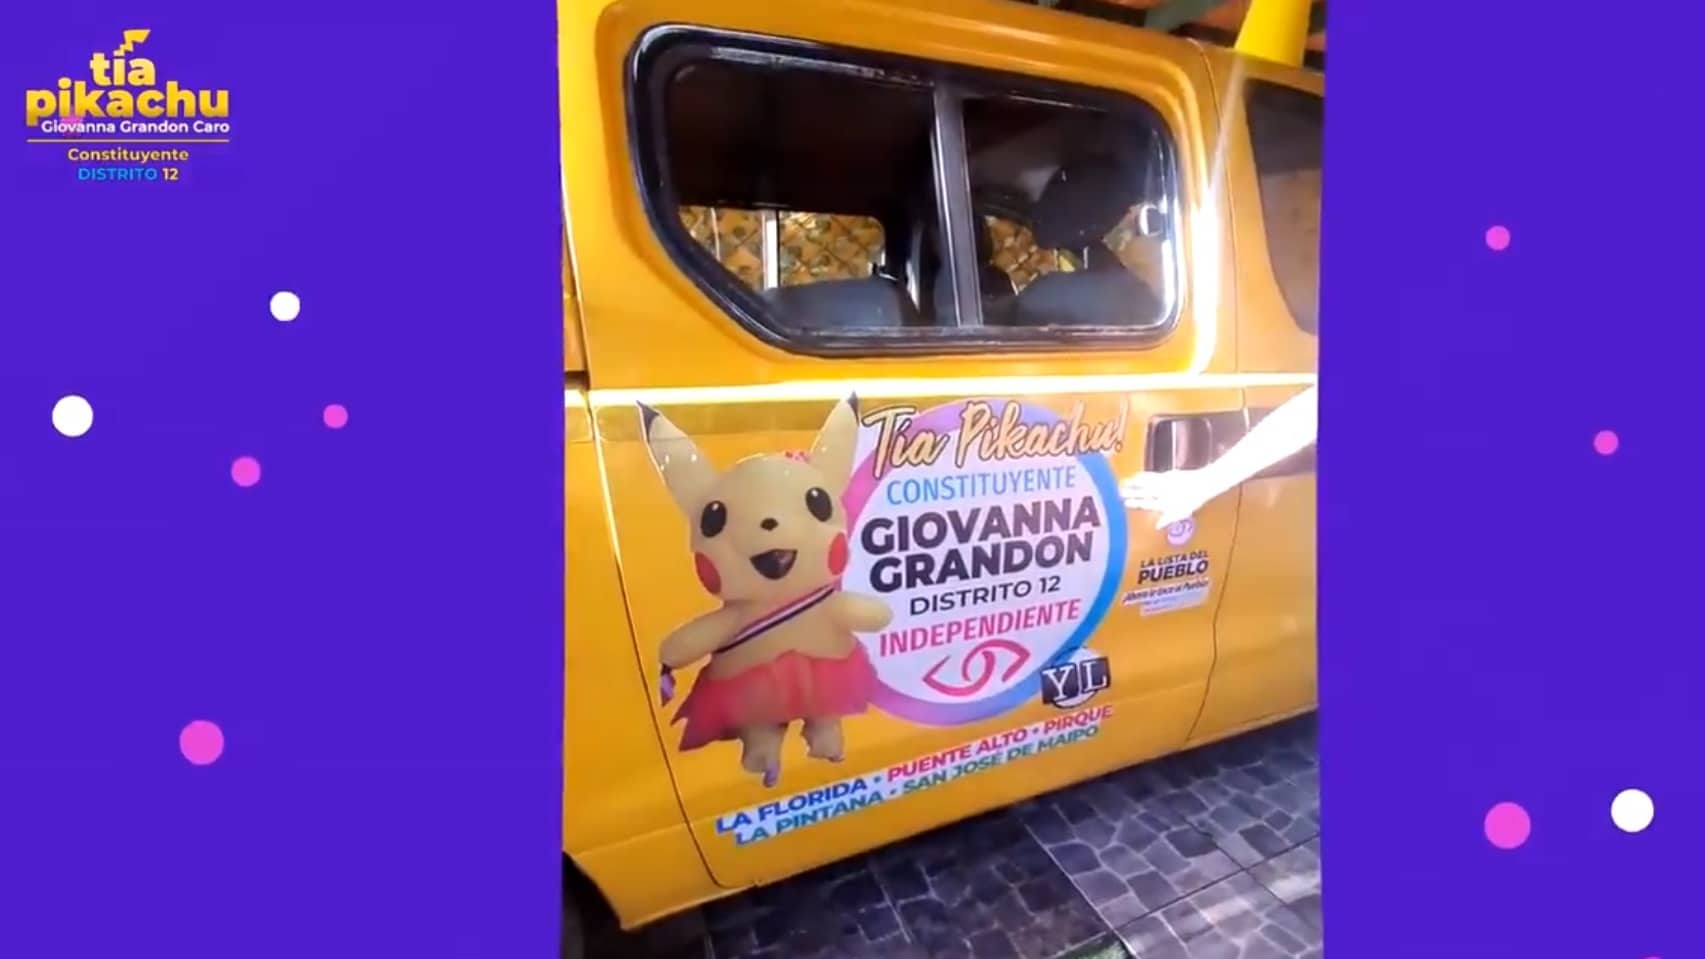 Giovanna Grandón Caro, candidata a las elecciones constituyentes de Chile, recorrerá las calles con este “Pikachumóvil”